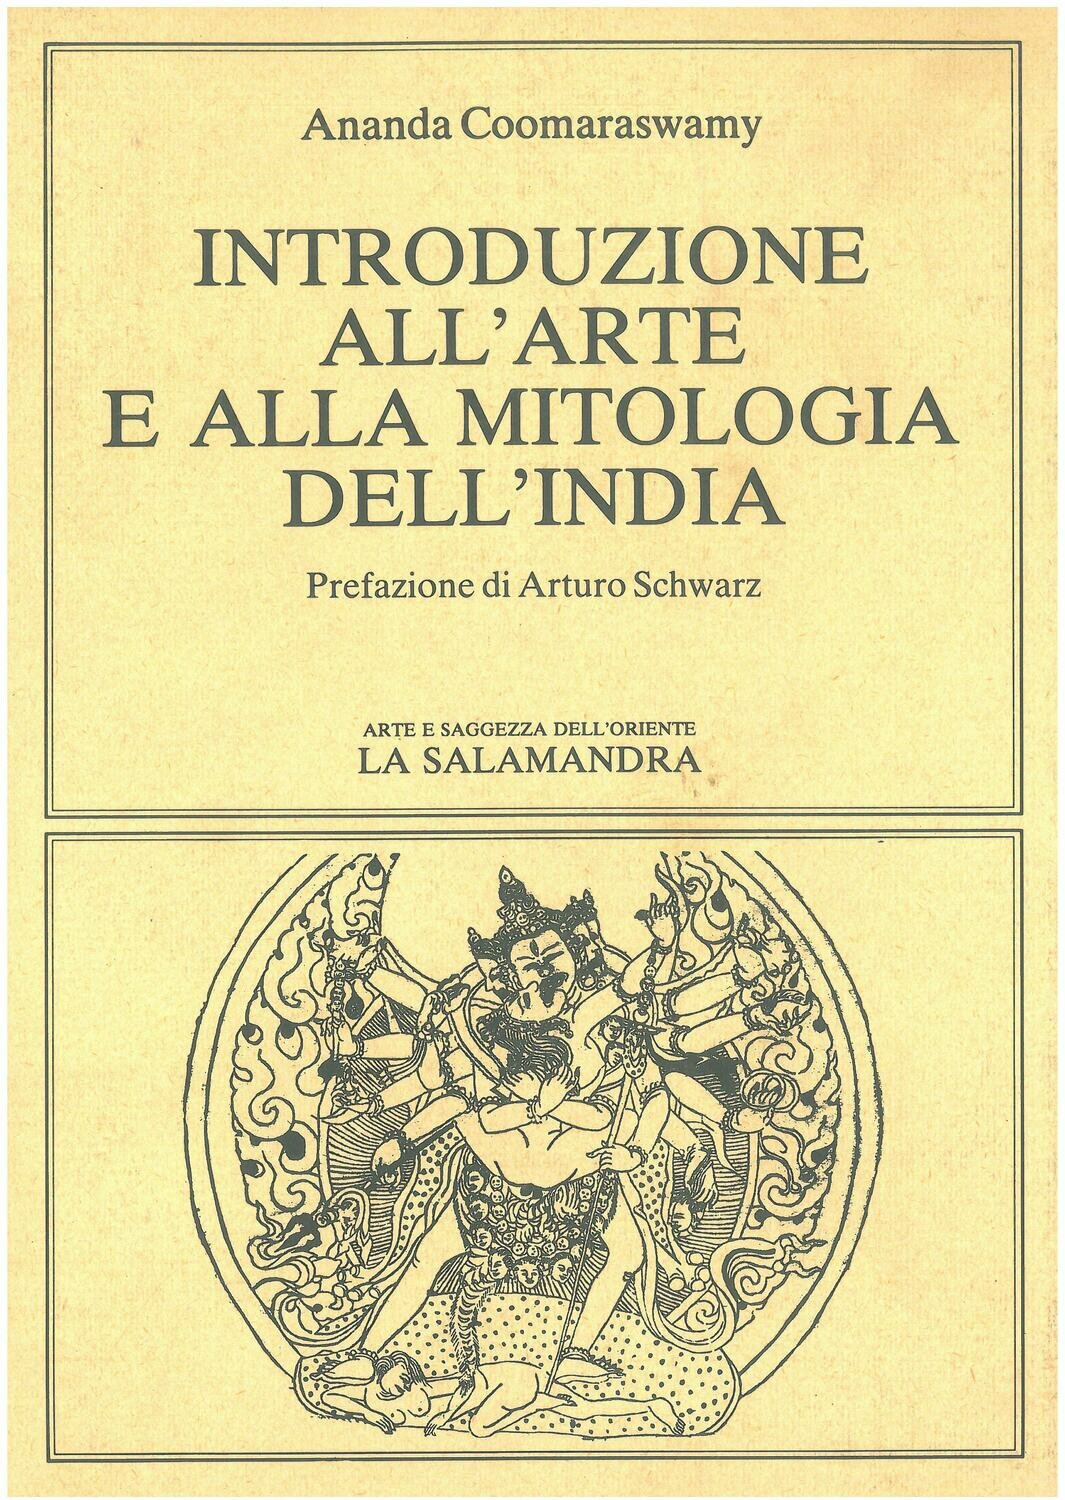 Coomaraswamy A.- INTRODUZIONE ALL'ARTE ALLA MITOLOGIA DELL'INDIA. Prefazione di A. Schwarz